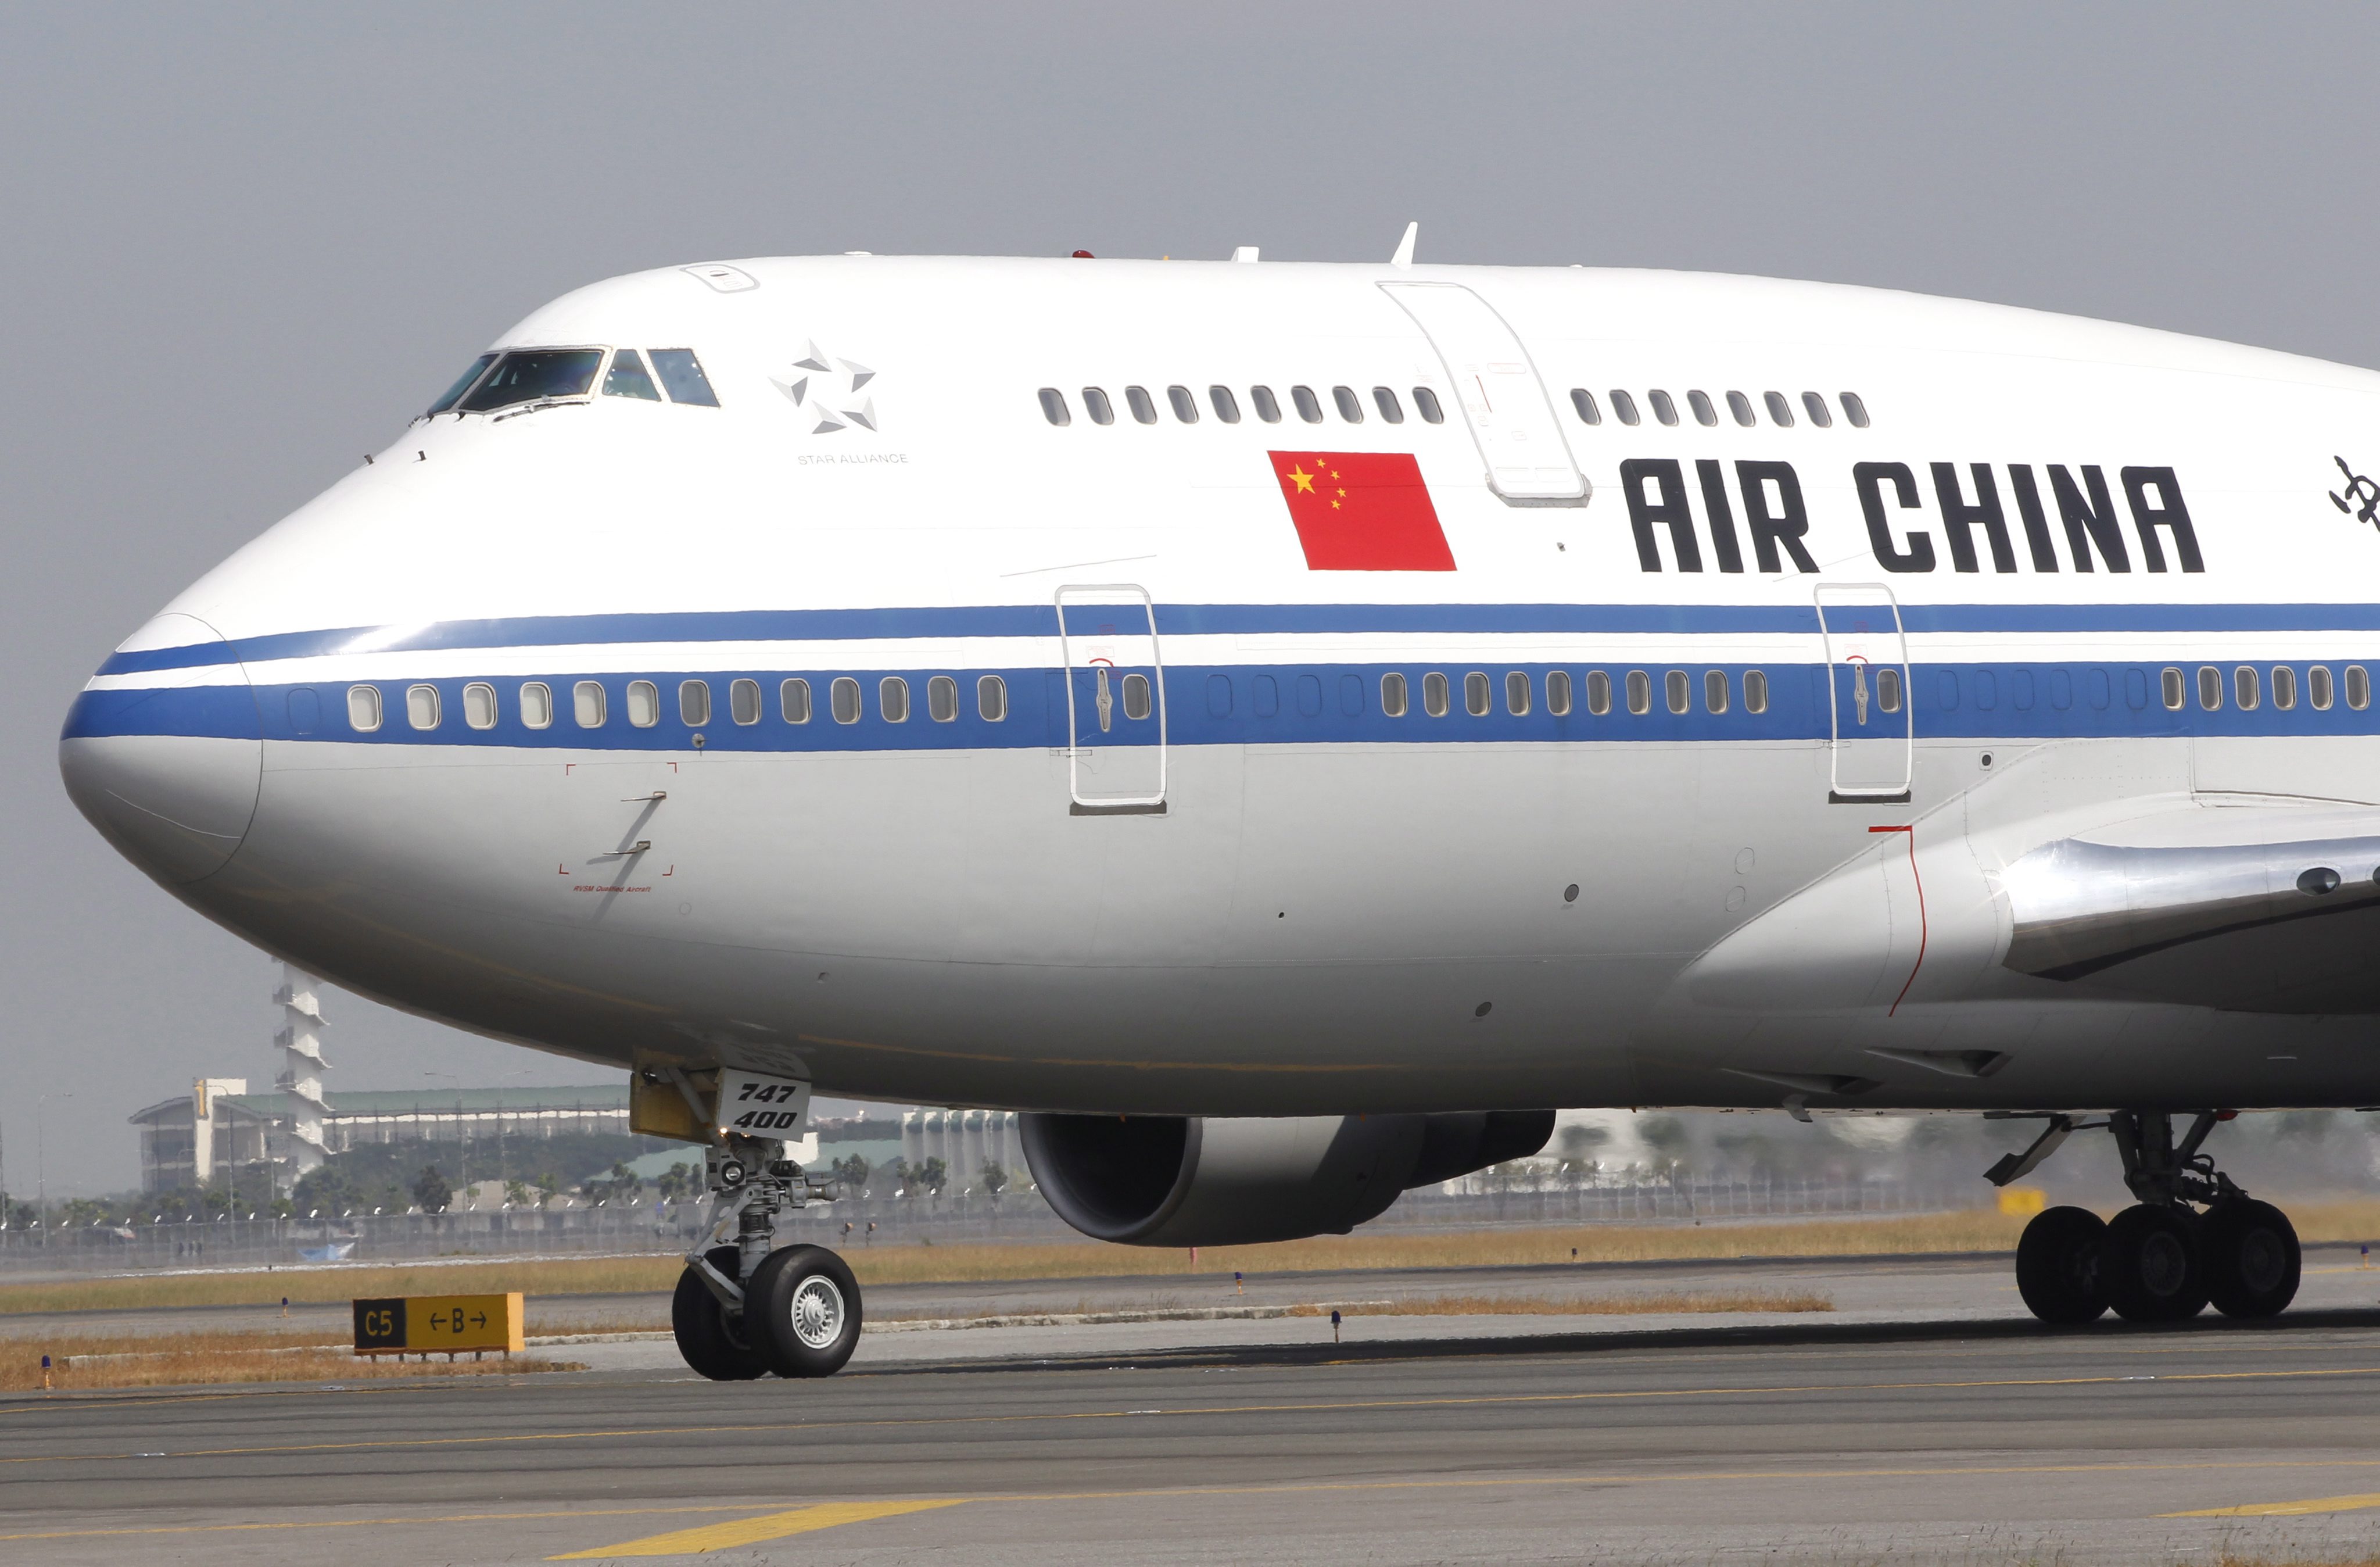 Αεροπλάνο με 133 επιβαίνοντες συνετρίβη στη νοτιοδυτική Κίνα